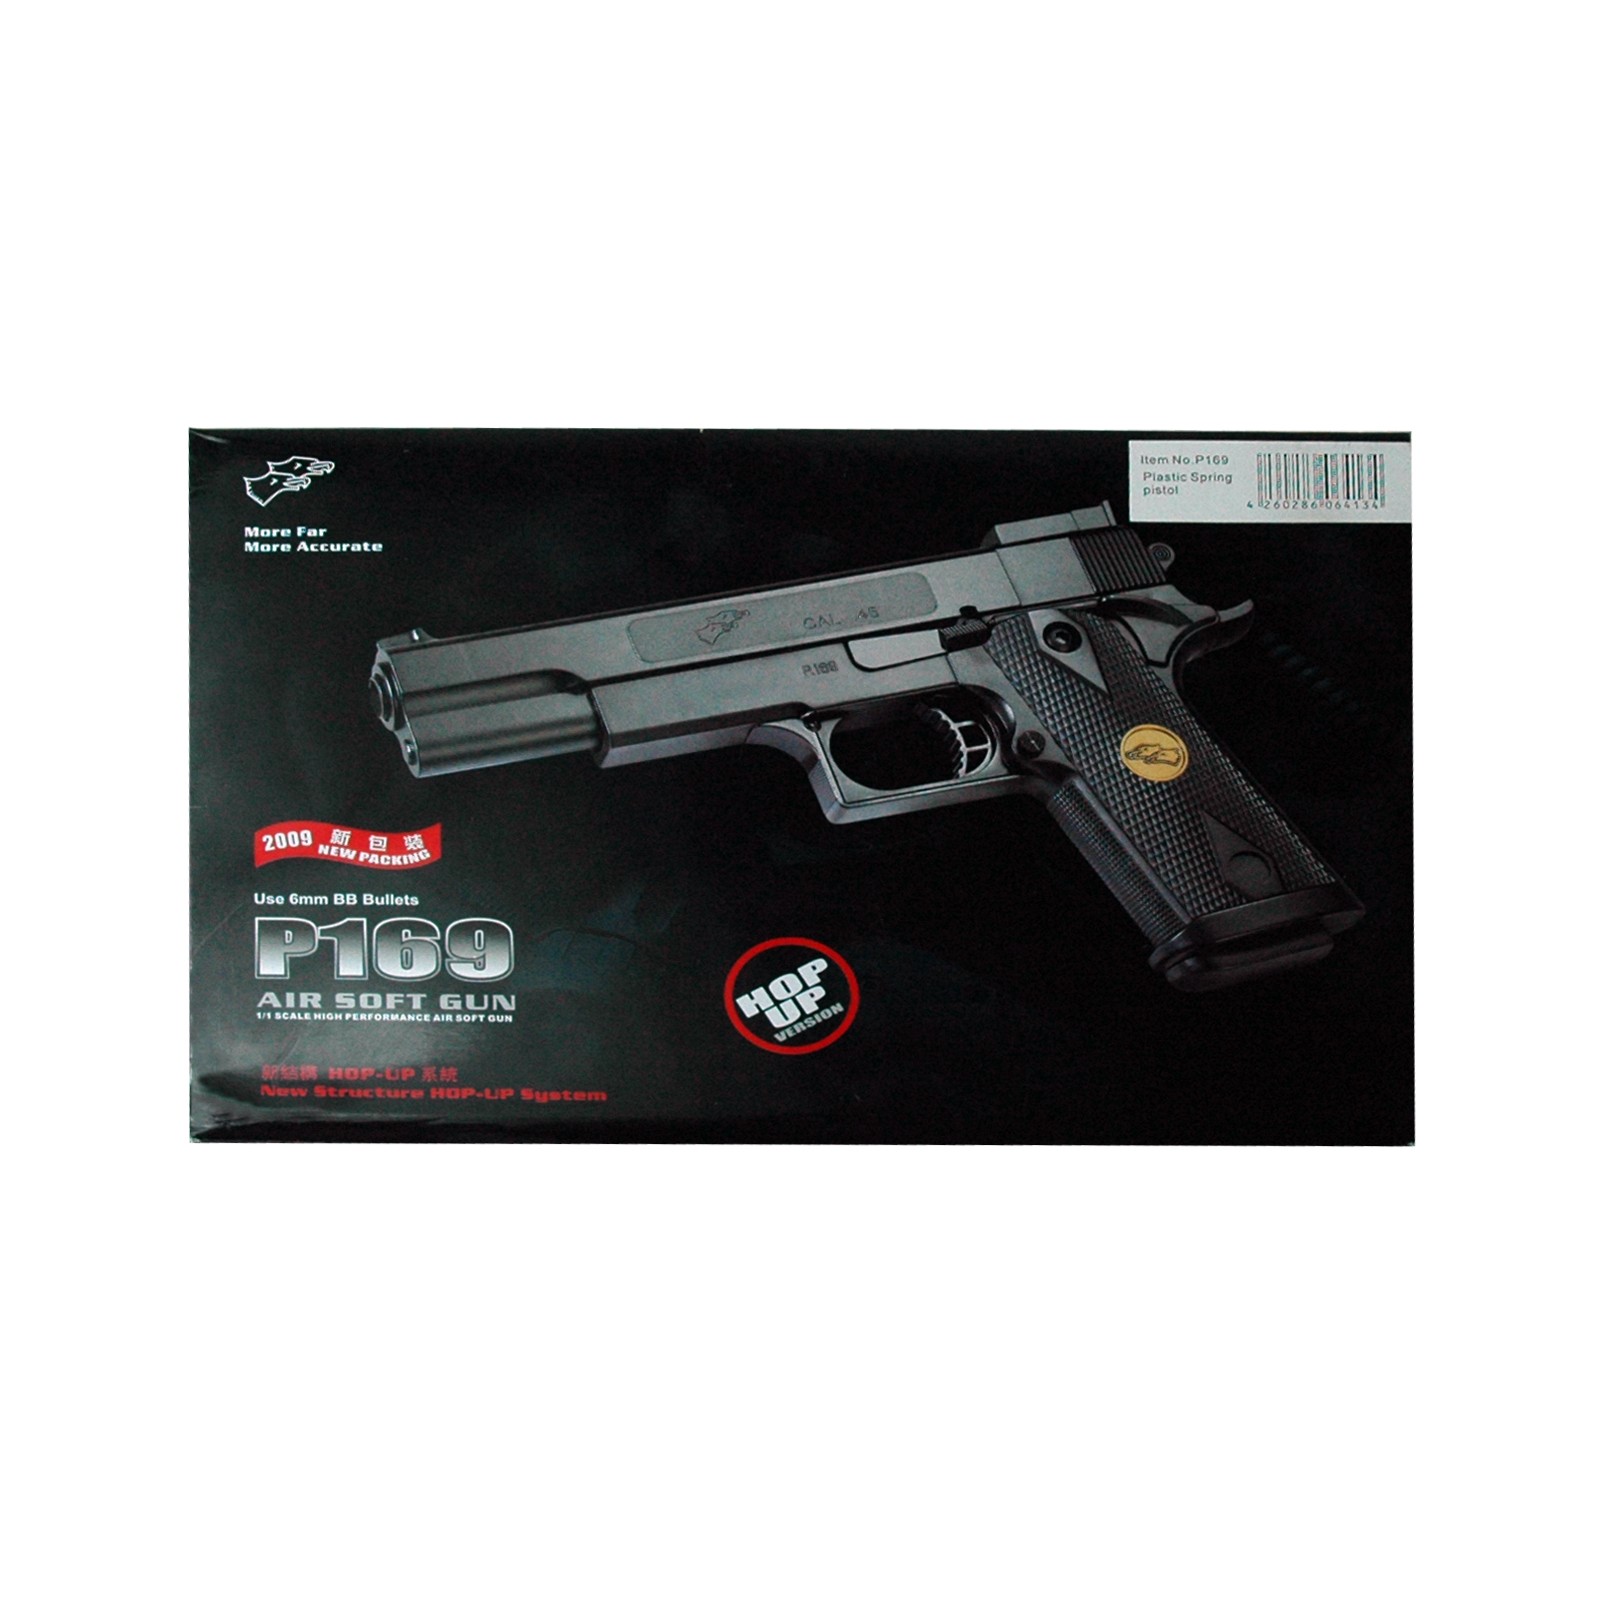 Rayline Spielzeugpistole P169 schwarz Inklusive Magazin und Munition 